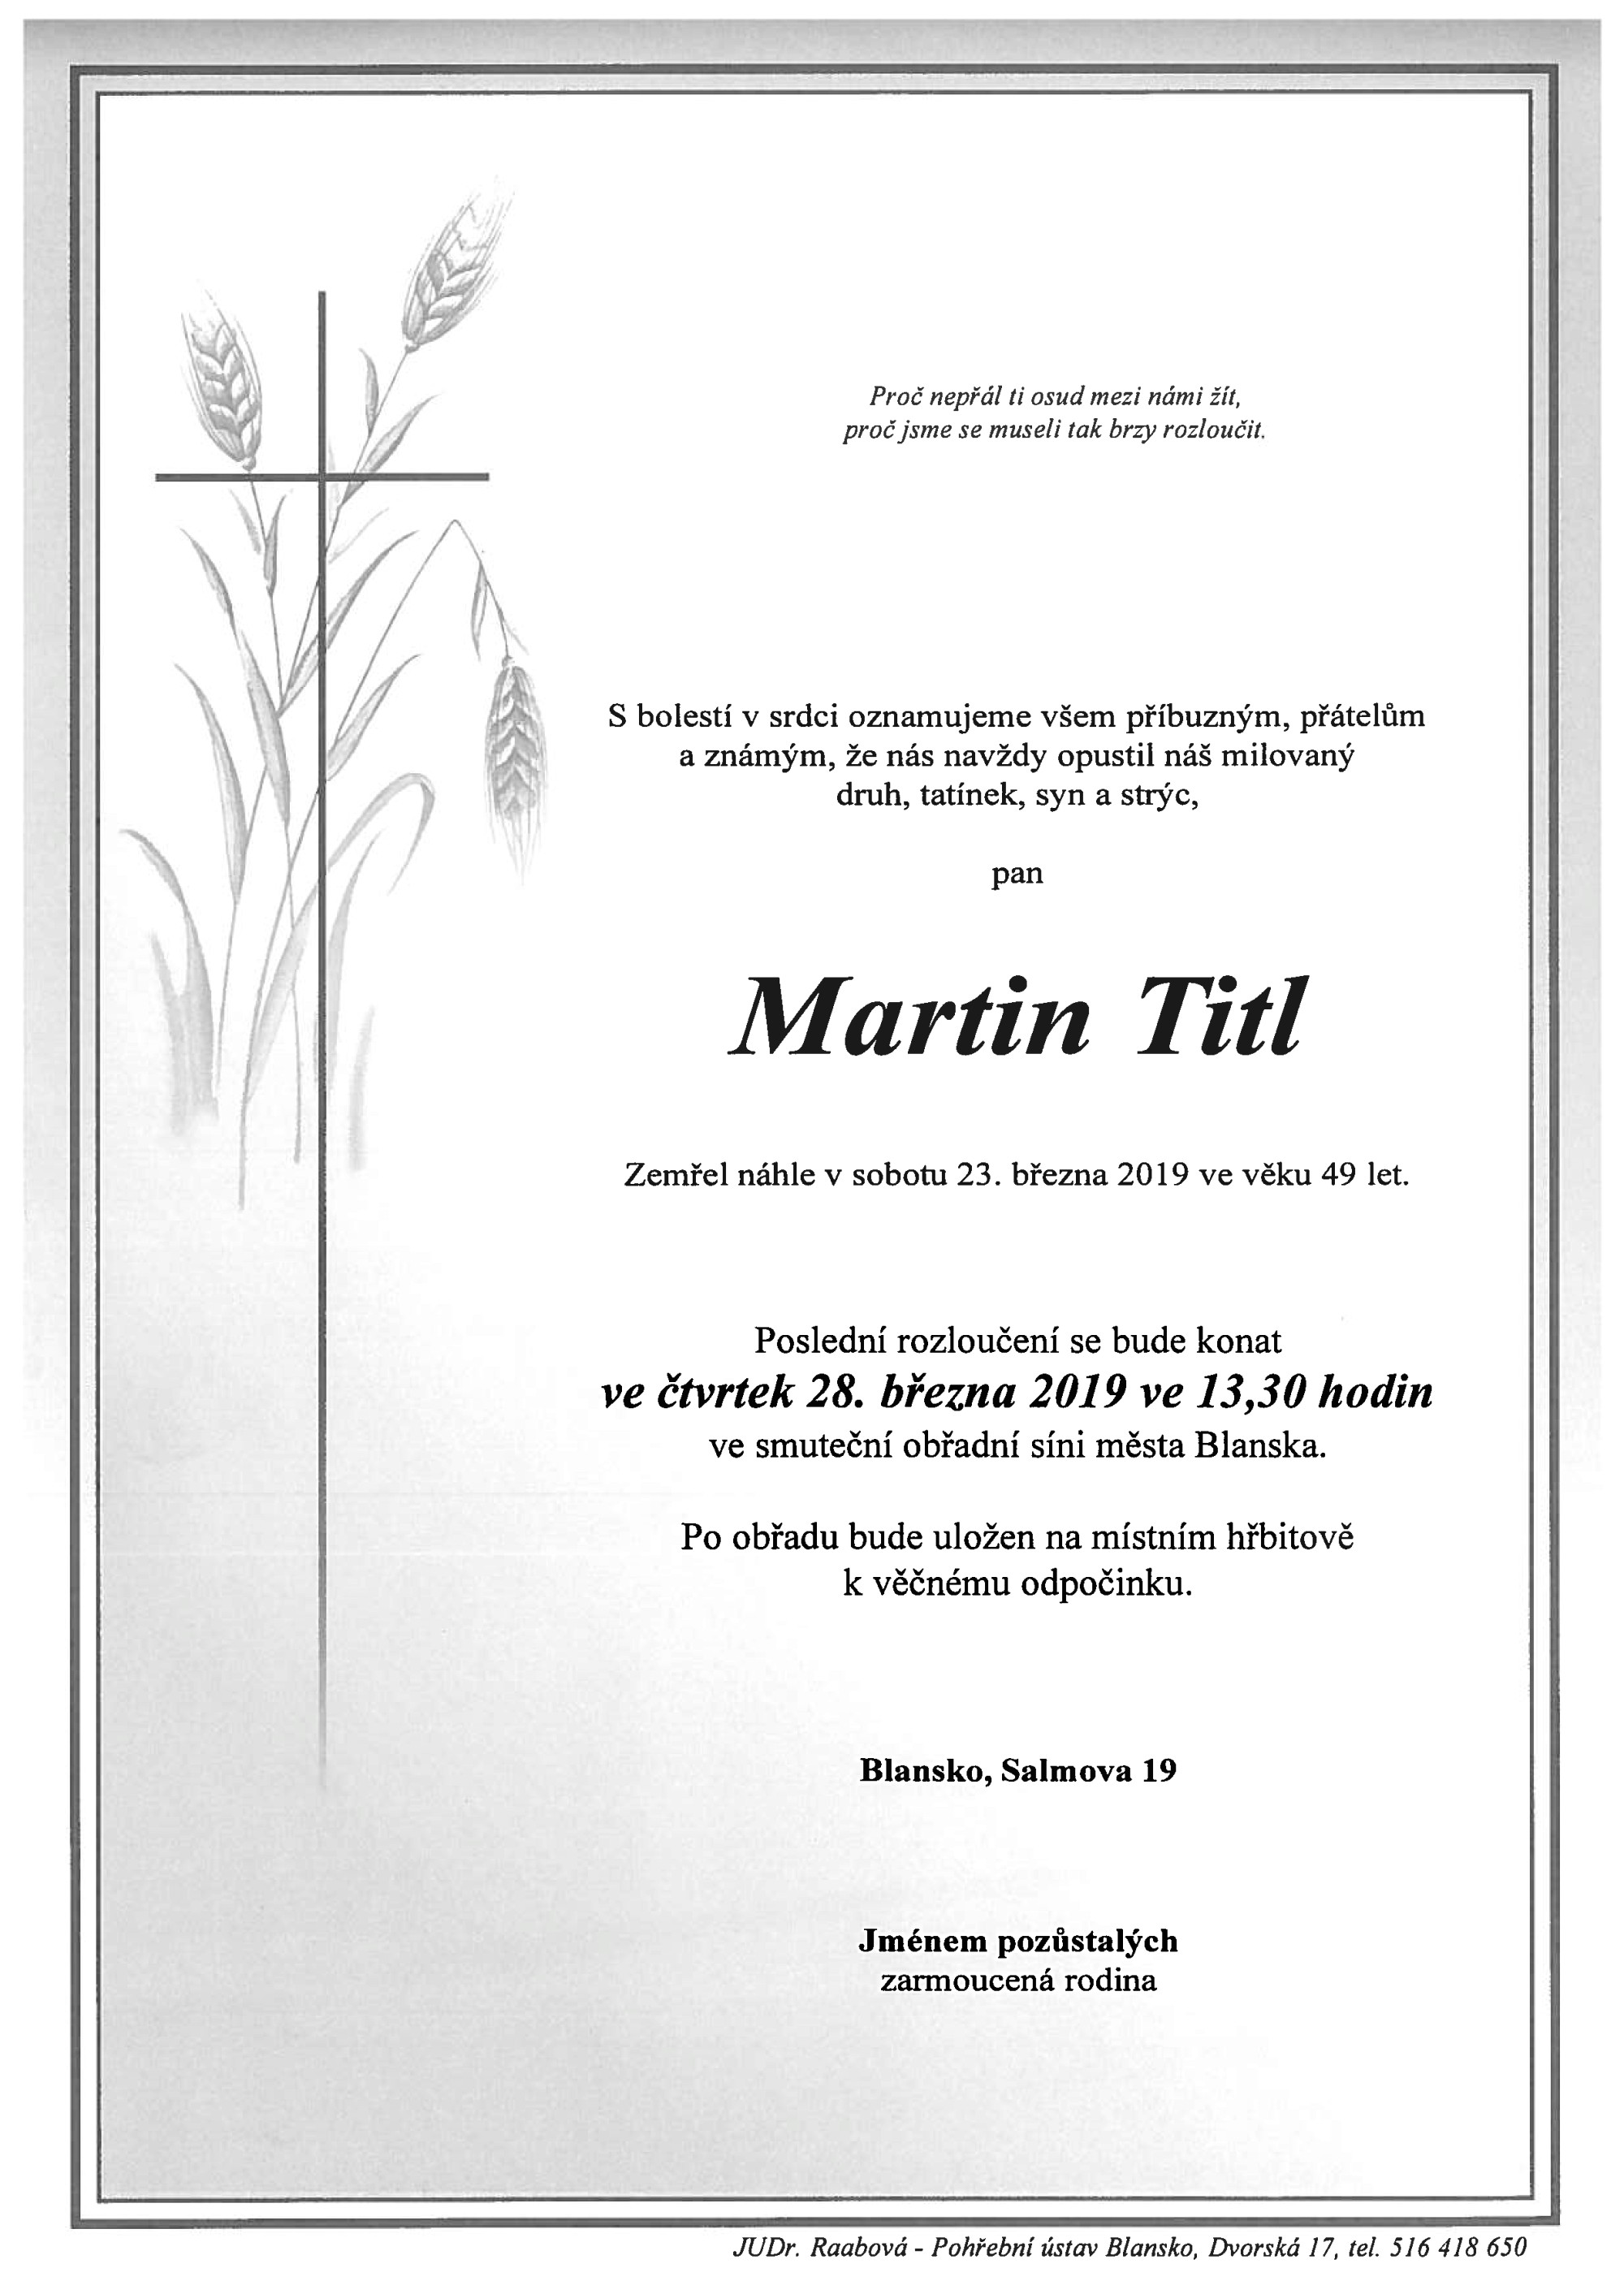 Martin Titl